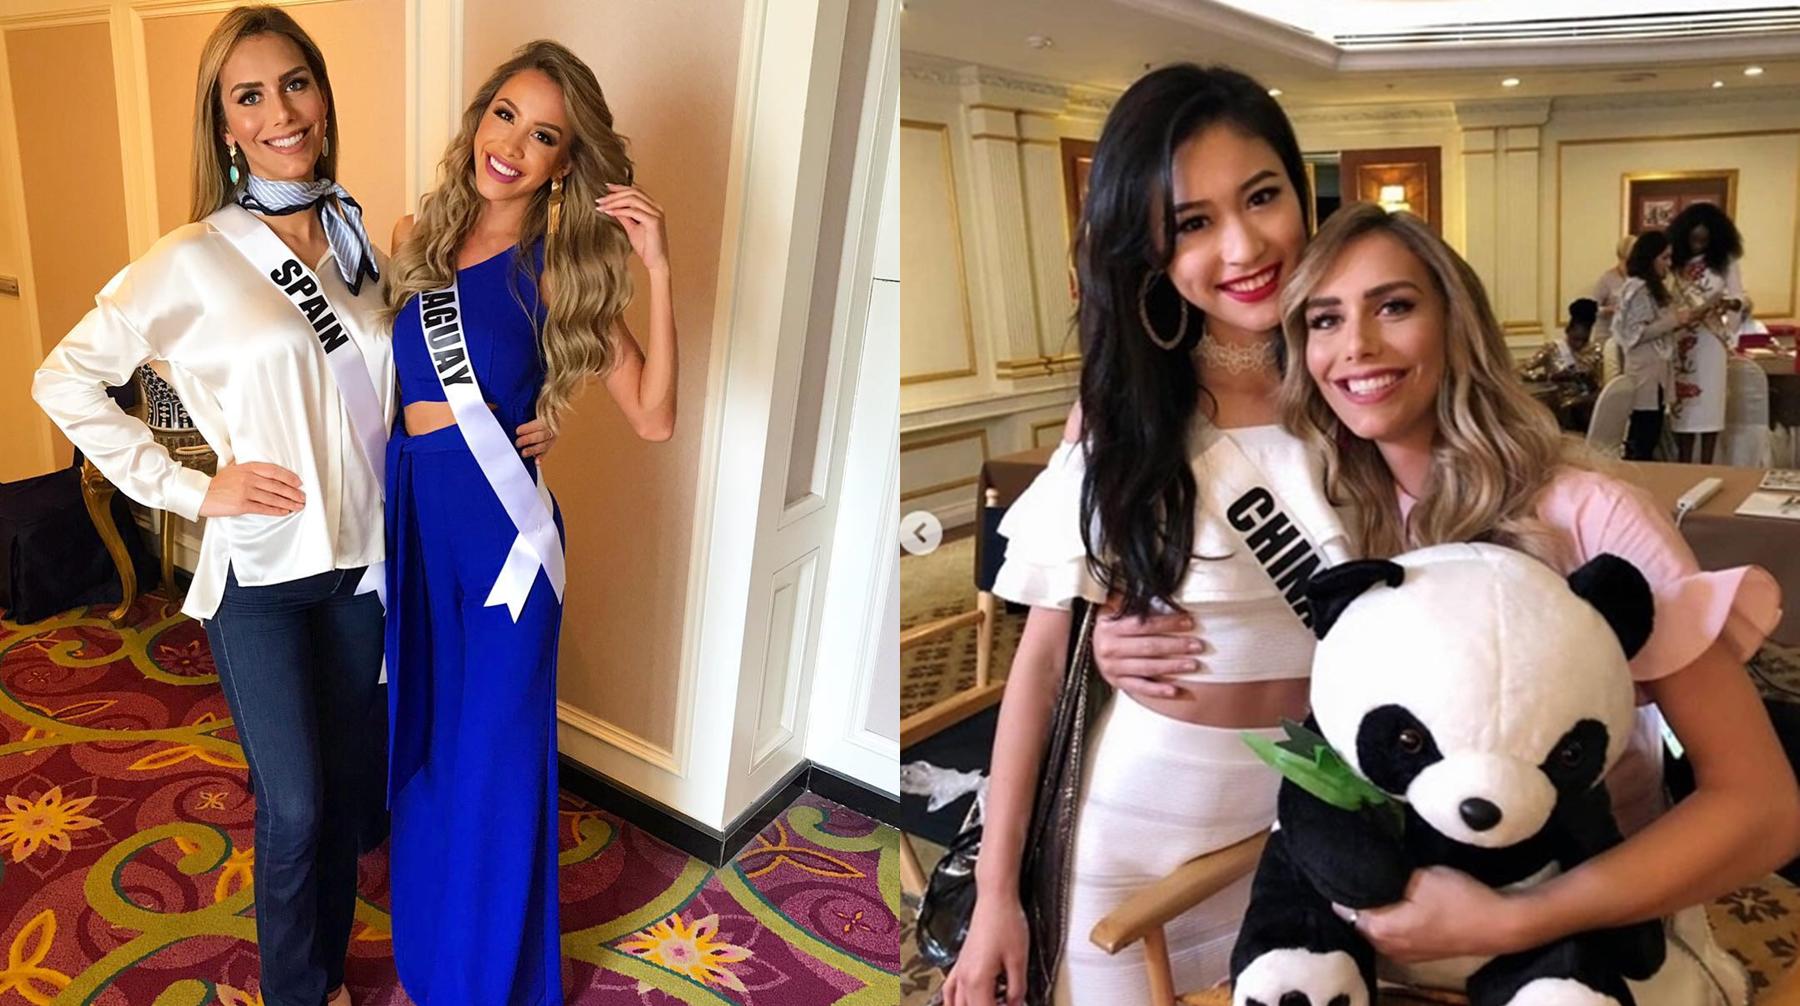 Ángela Ponce compartió y aparece en fotos de sus compañeras del certamen, con las cuales parece haber congeniado. Fuente: Instagram.